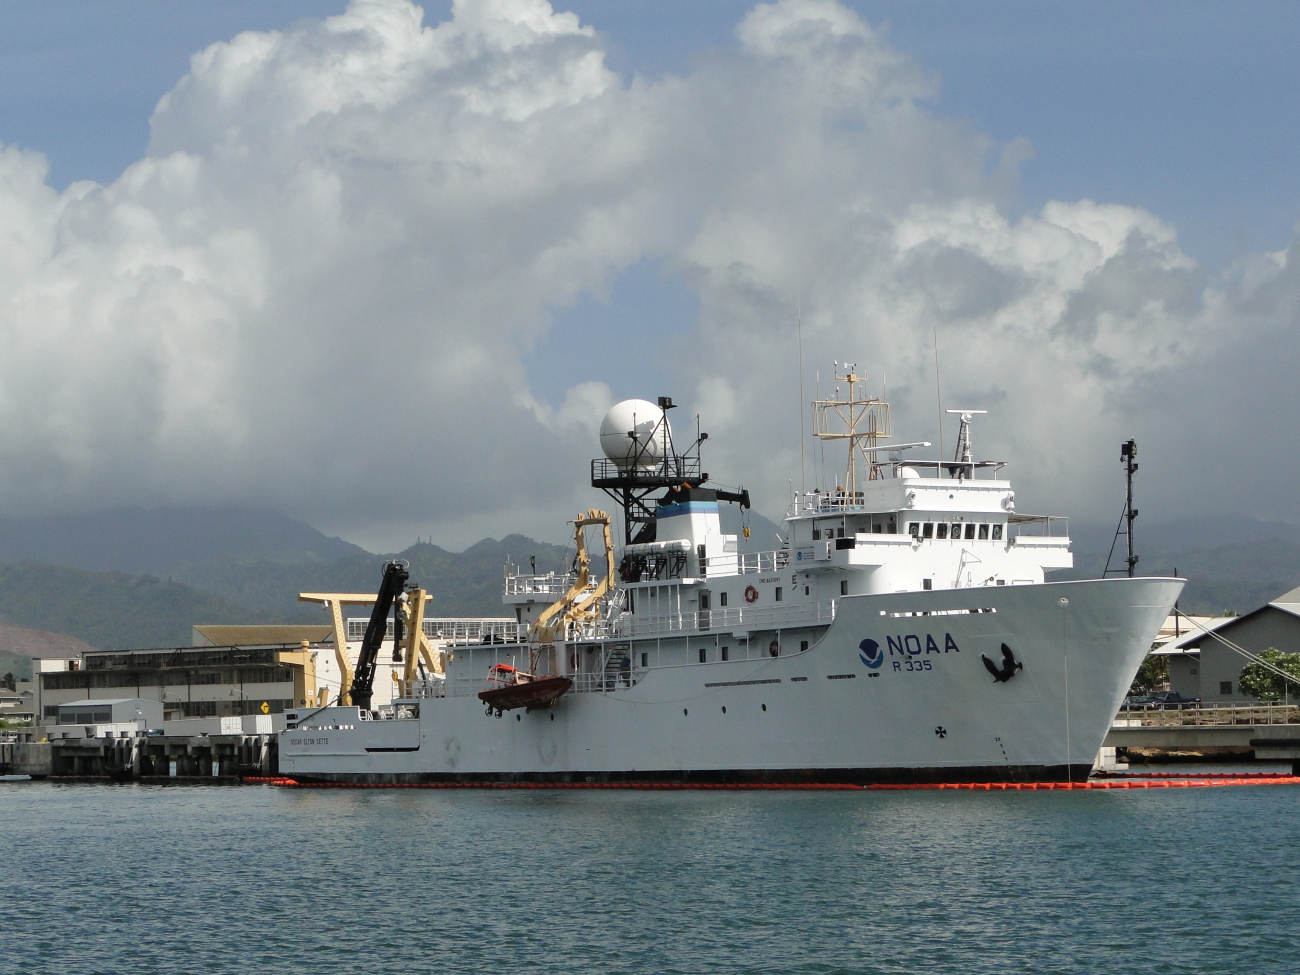 NOAA Ship OSCAR ELTON SETTE (R335) at pier